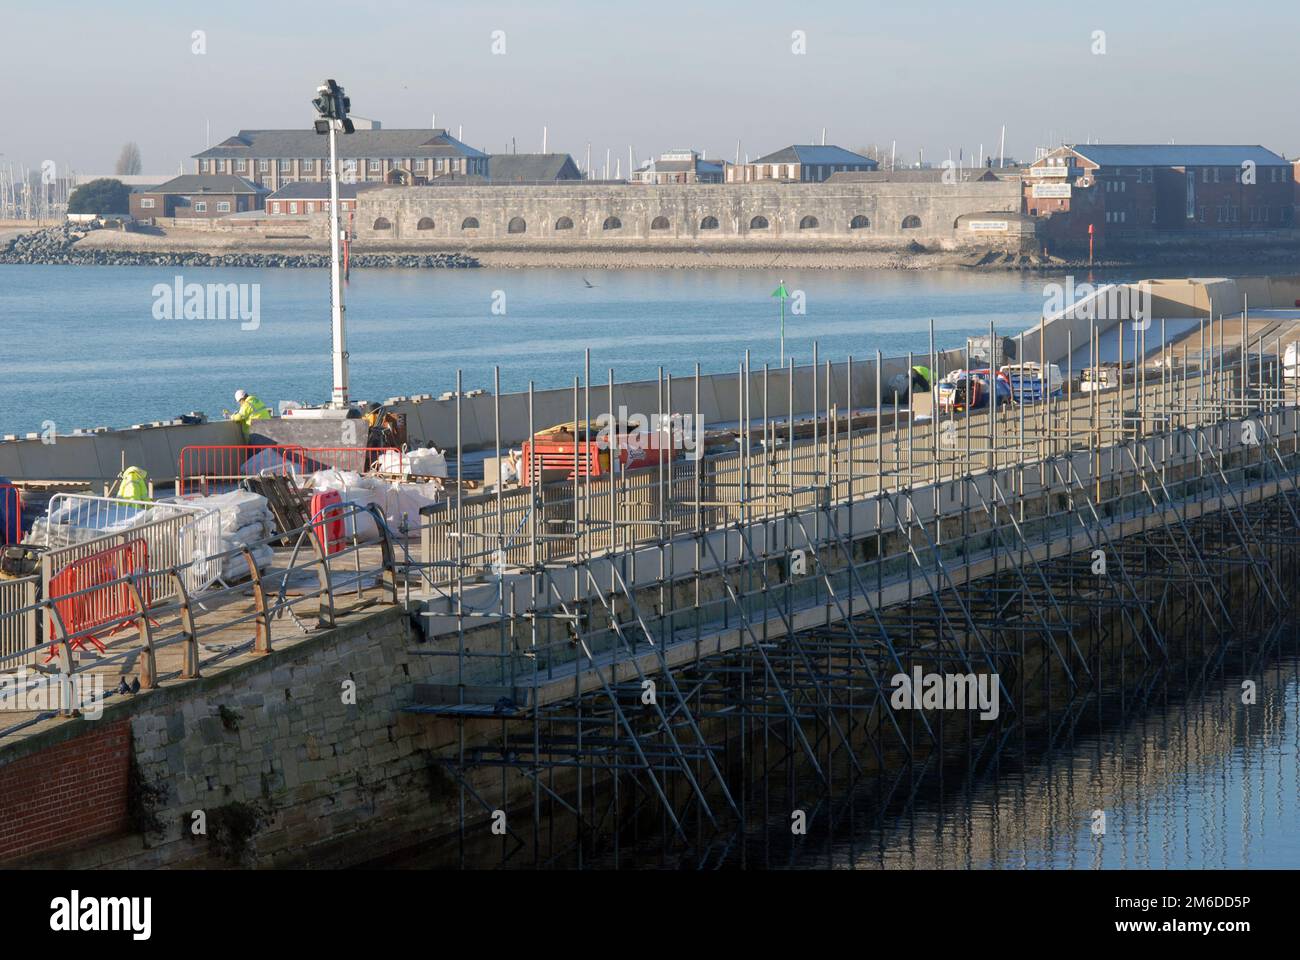 Southsea Coastal Scheme, reparaciones de muros de mar, Portsmouth, Hampshire, Reino Unido. Foto de stock